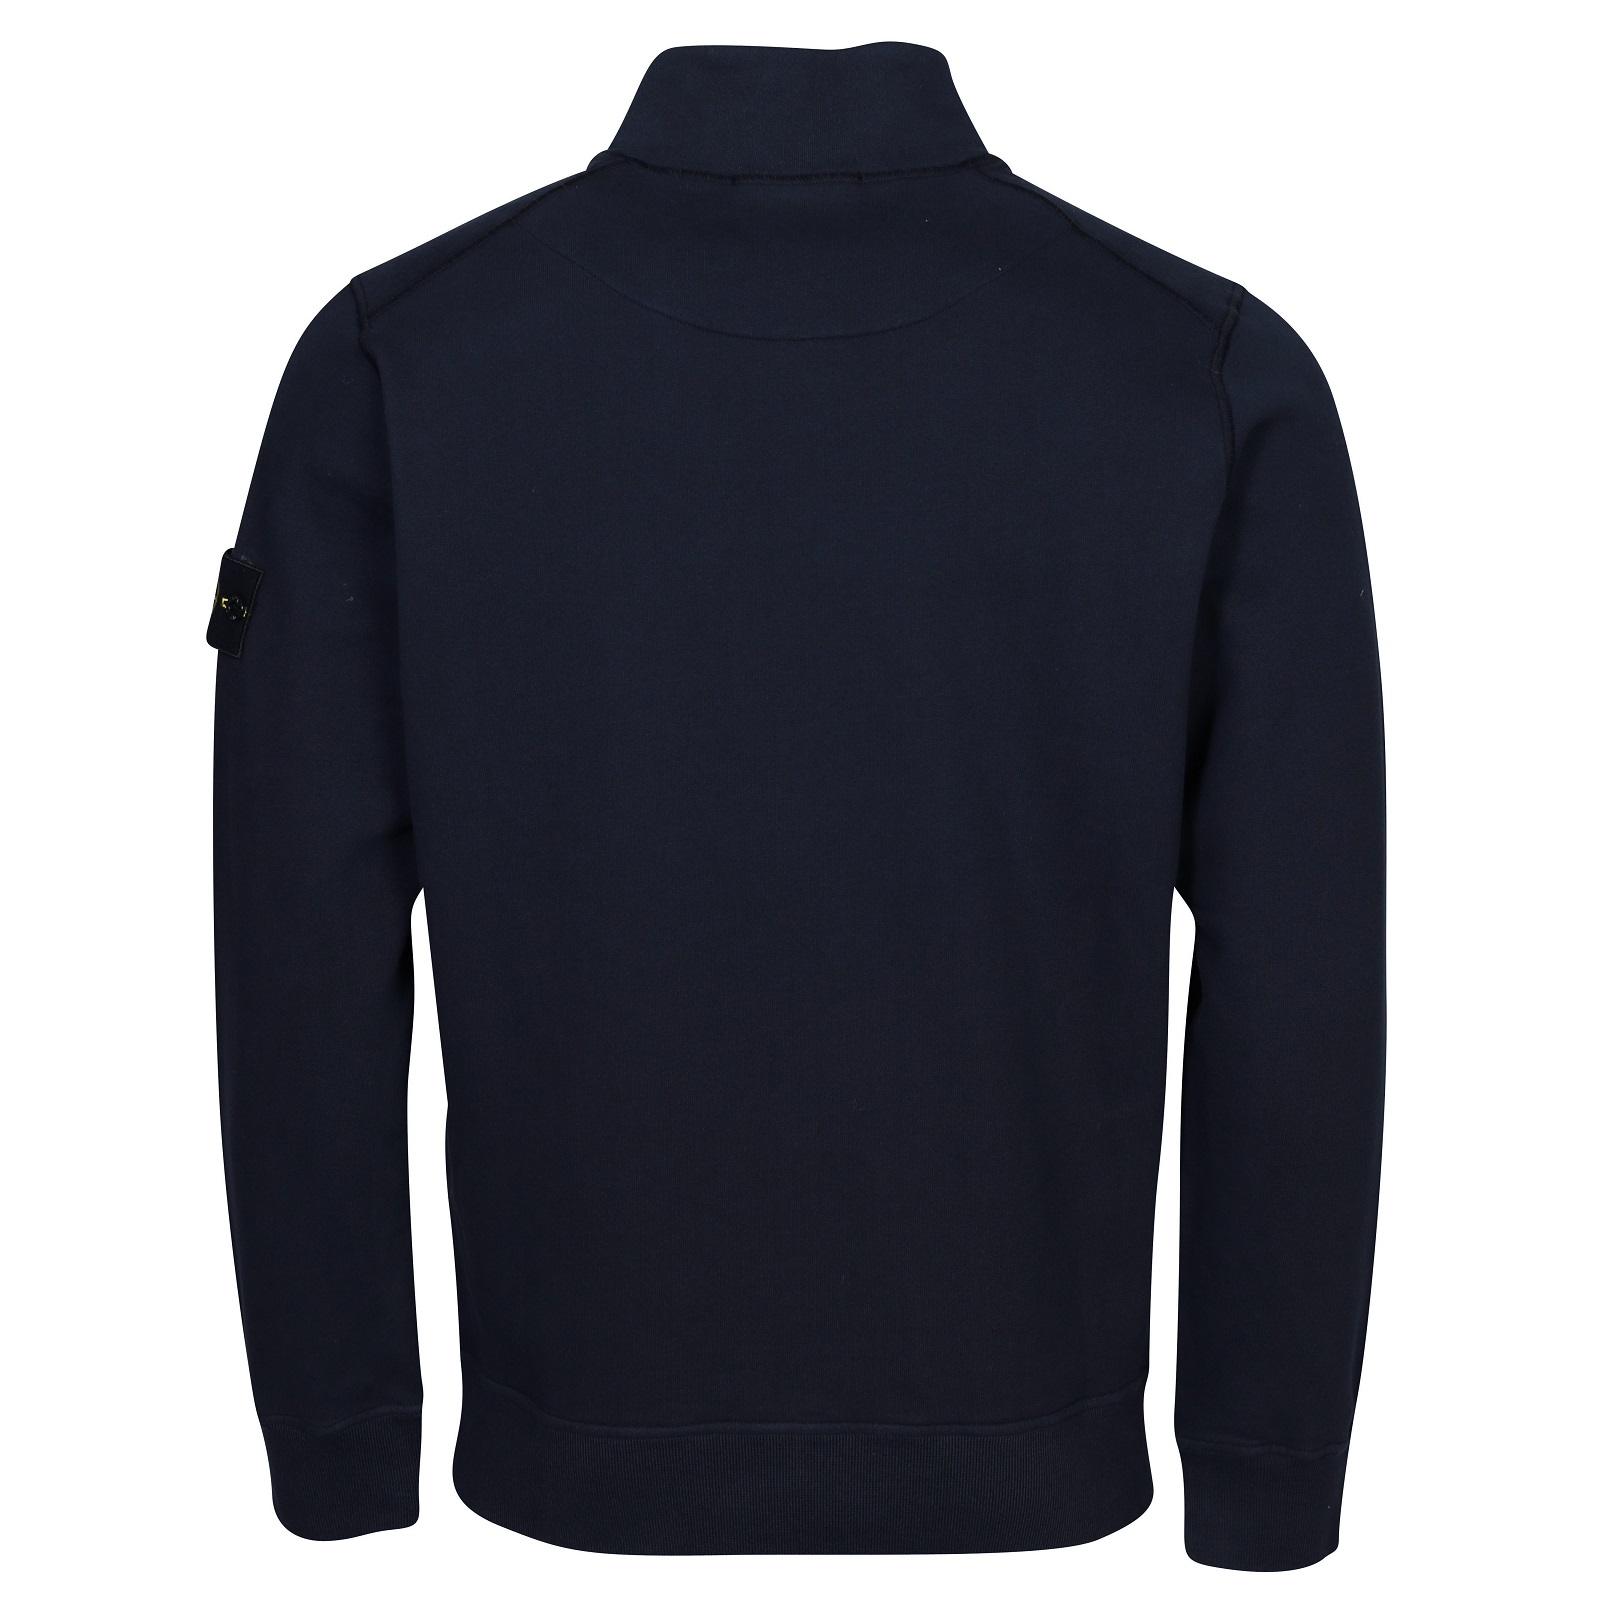 STONE ISLAND Half Zip Sweatshirt in Navy Blue S